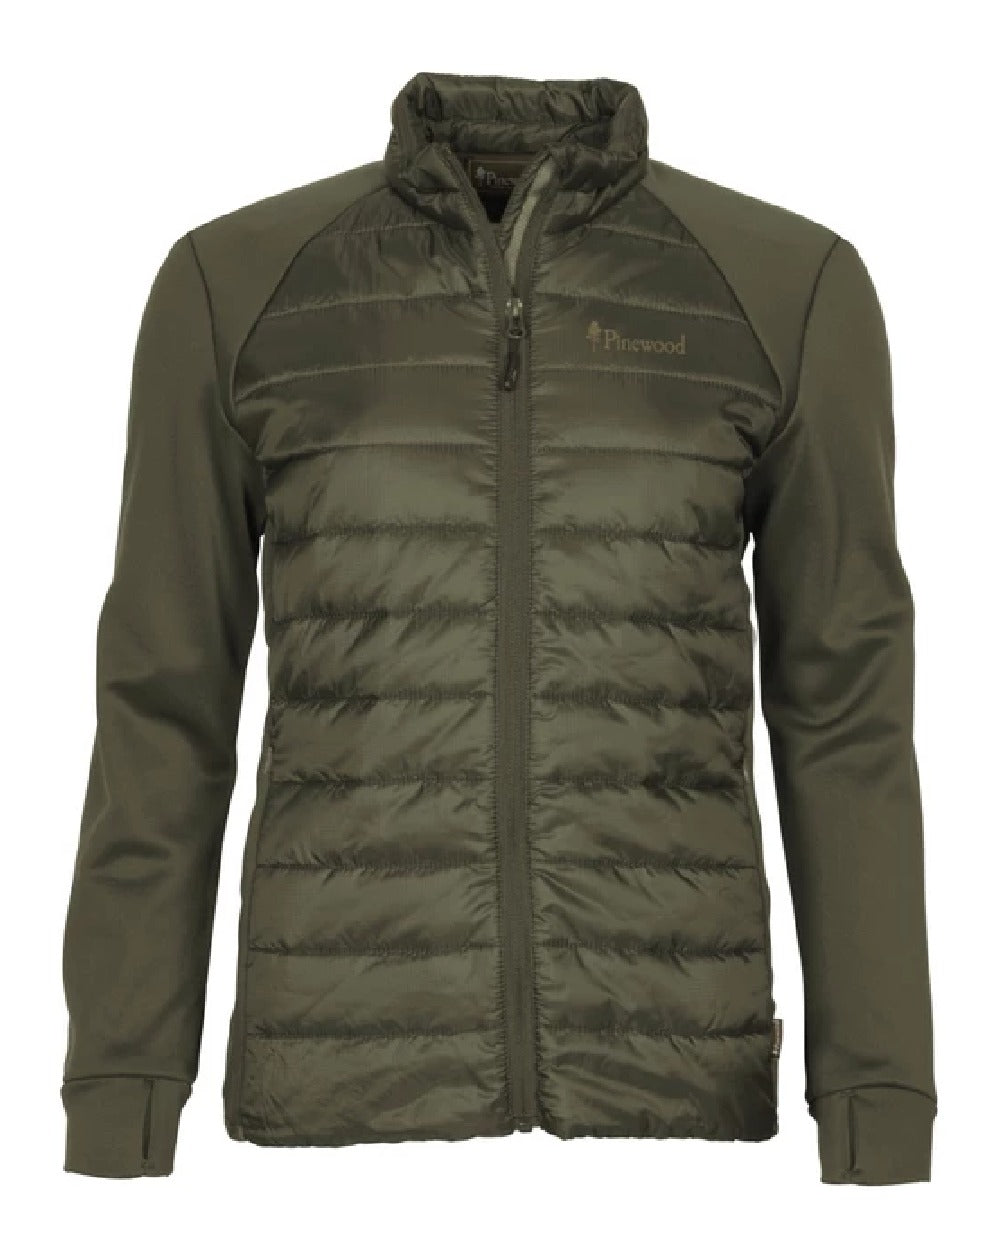 Pinewood Womens Finnveden Hybrid Power Fleece Jacket in Olive 